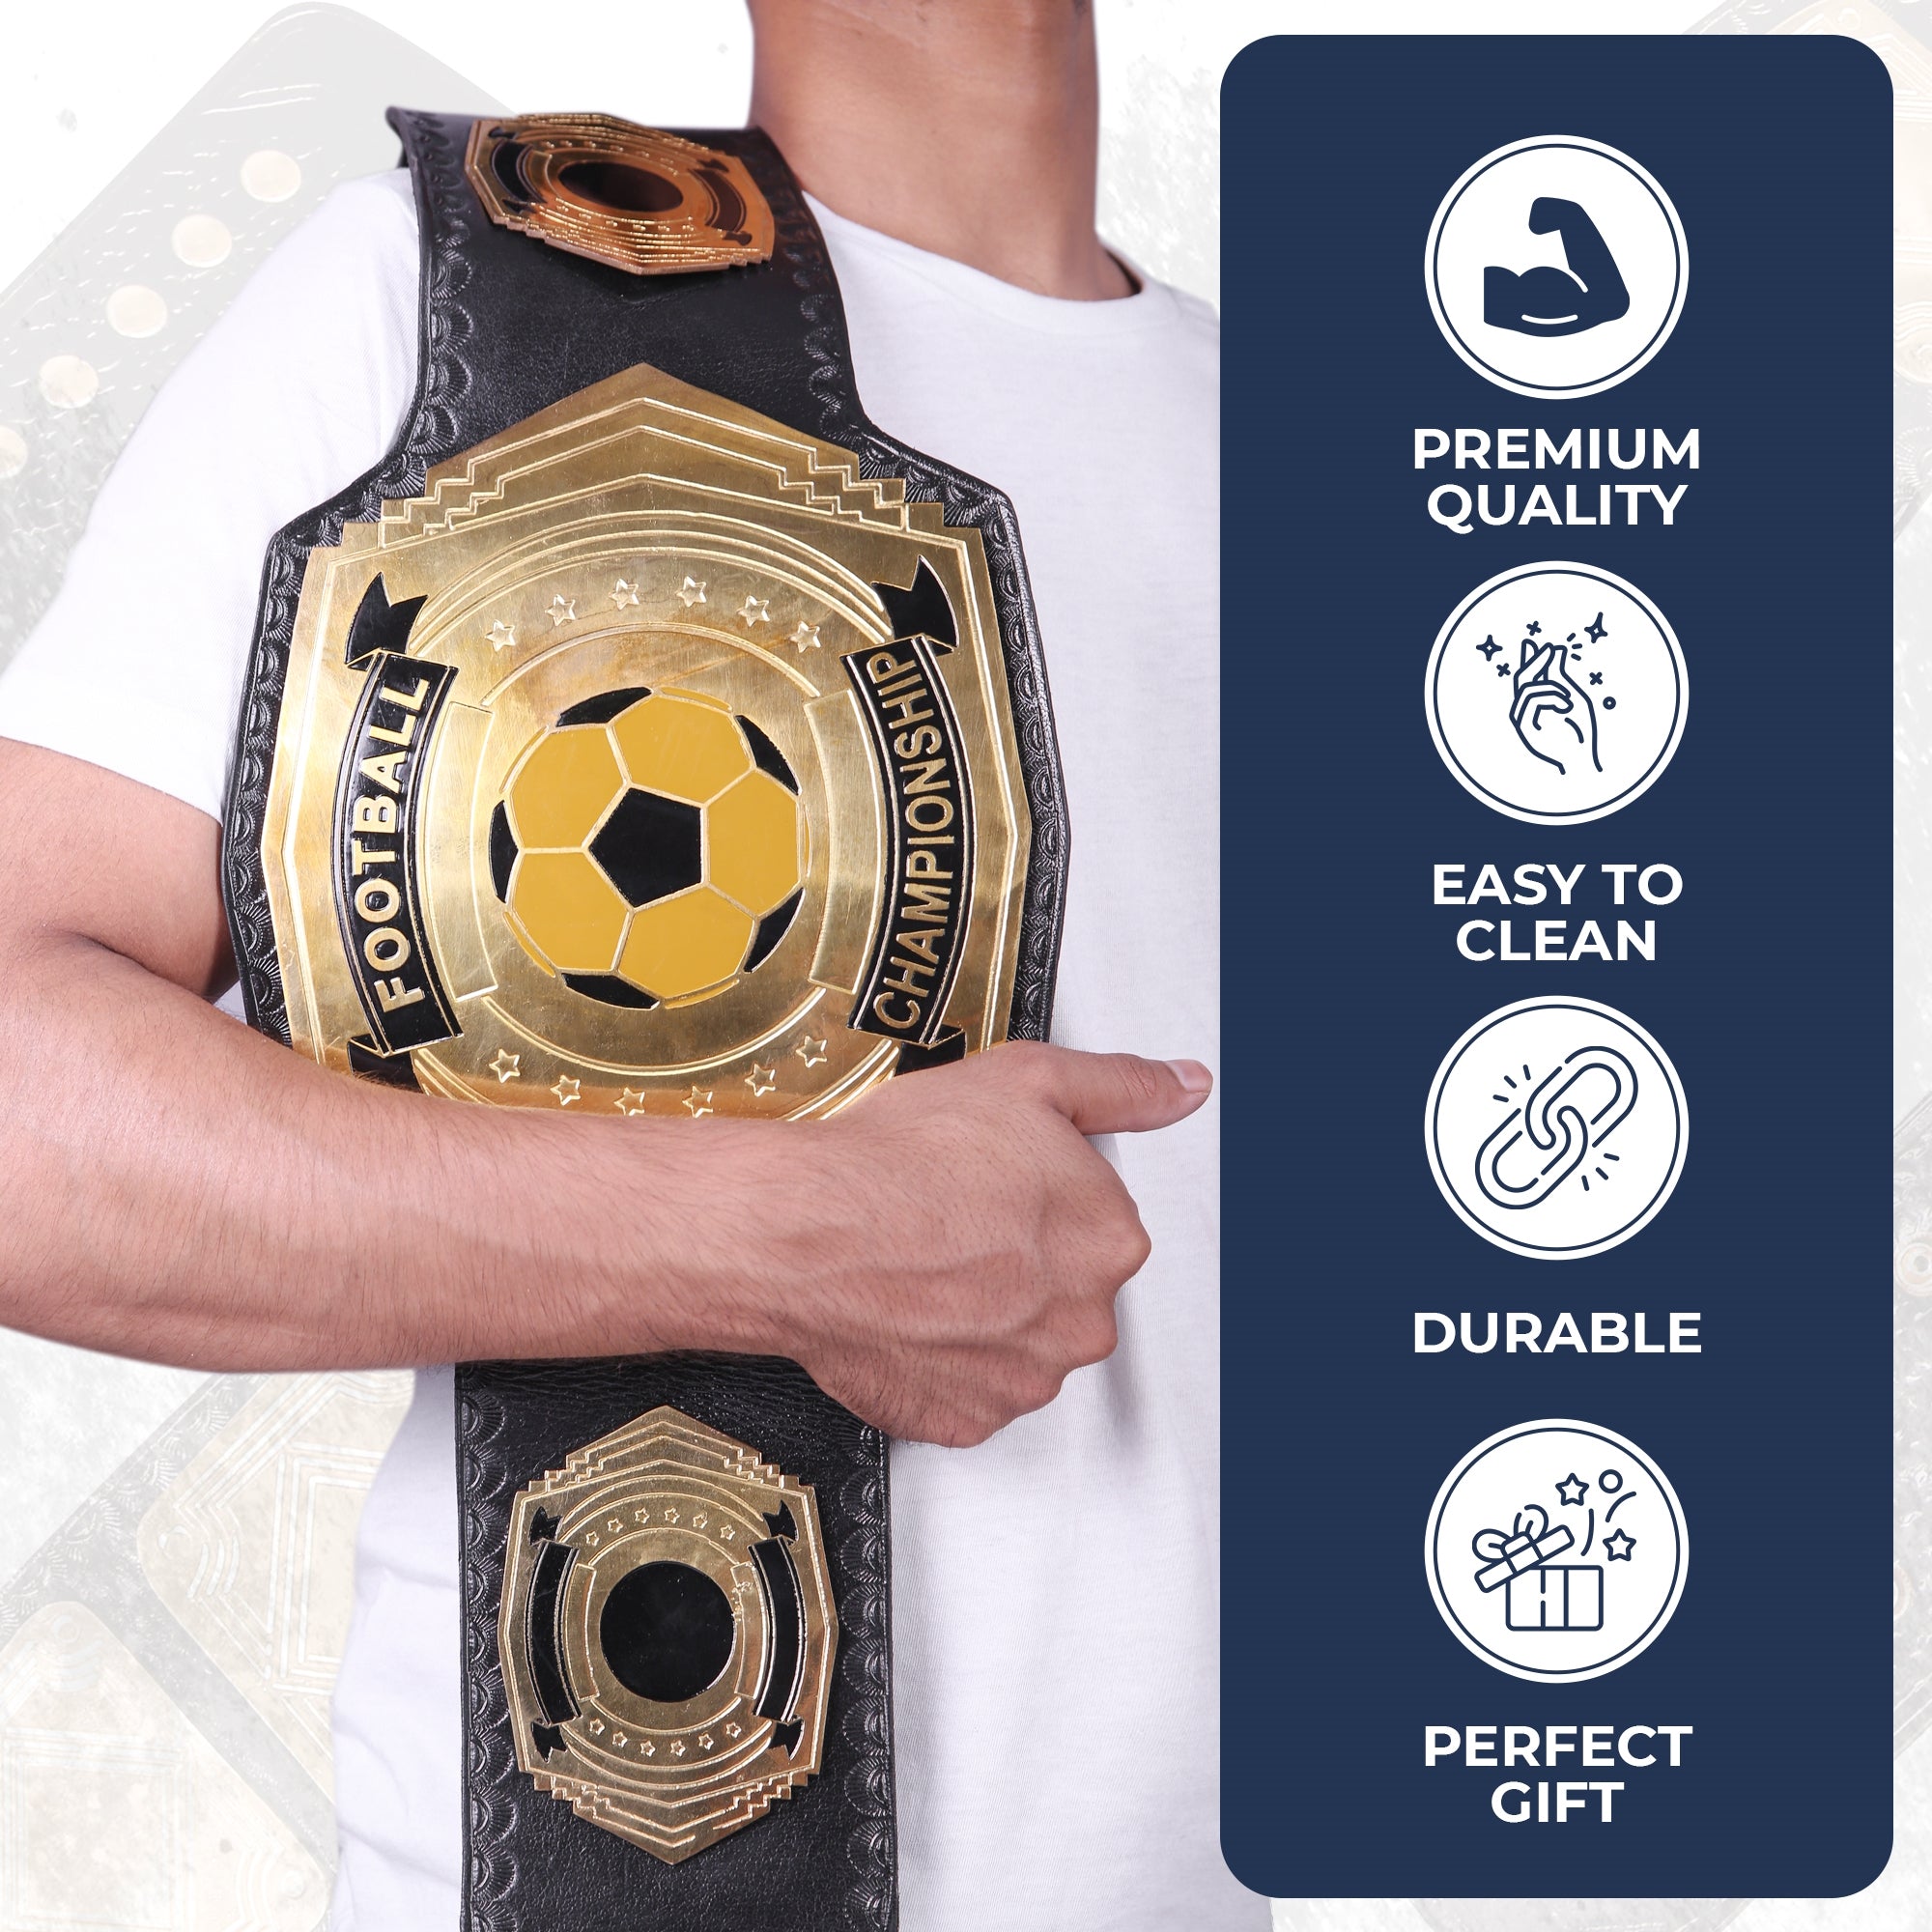 Custom Design Wrestling Belt